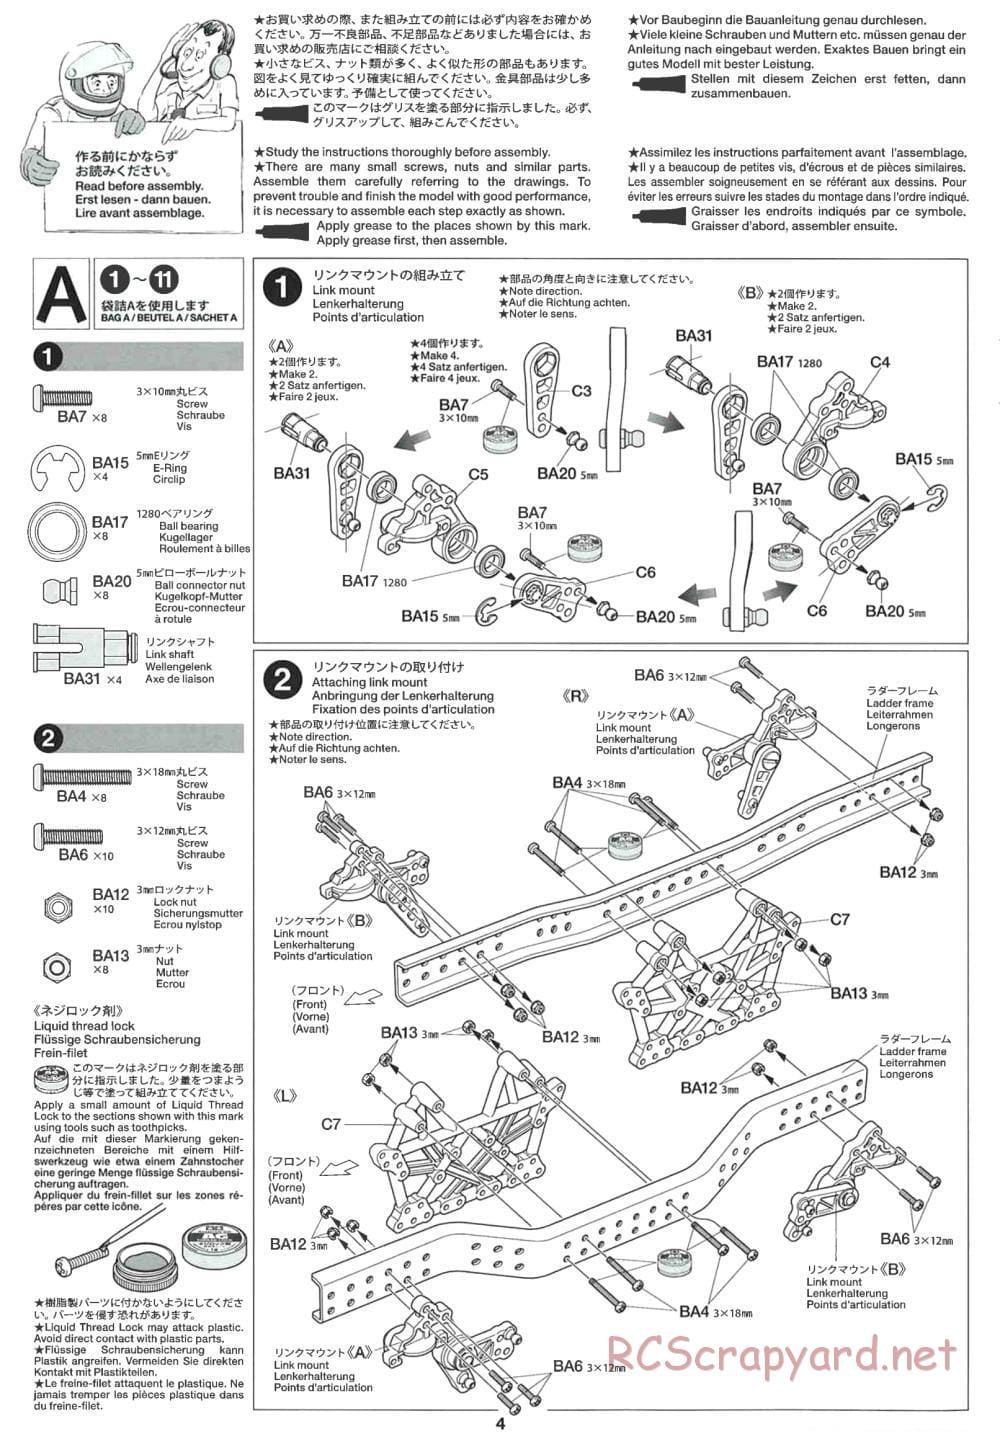 Tamiya - CR-01 Chassis - Manual - Page 4